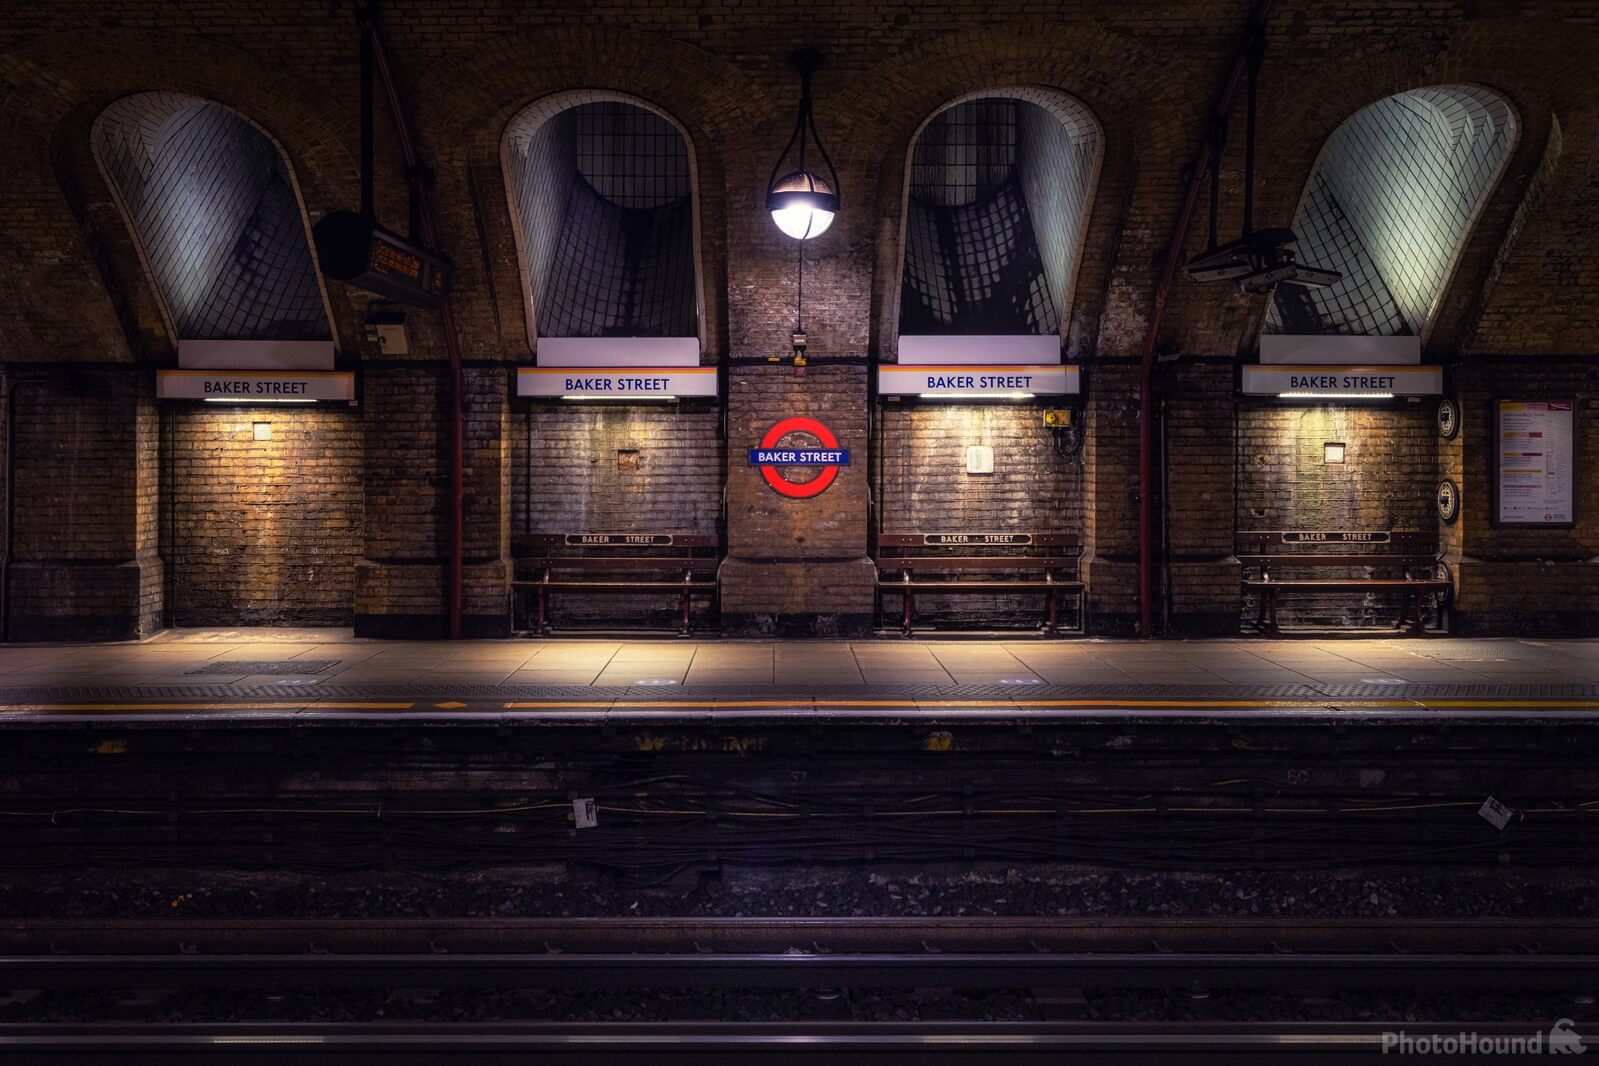 Image of Baker Street Tube Station by Jakub Bors